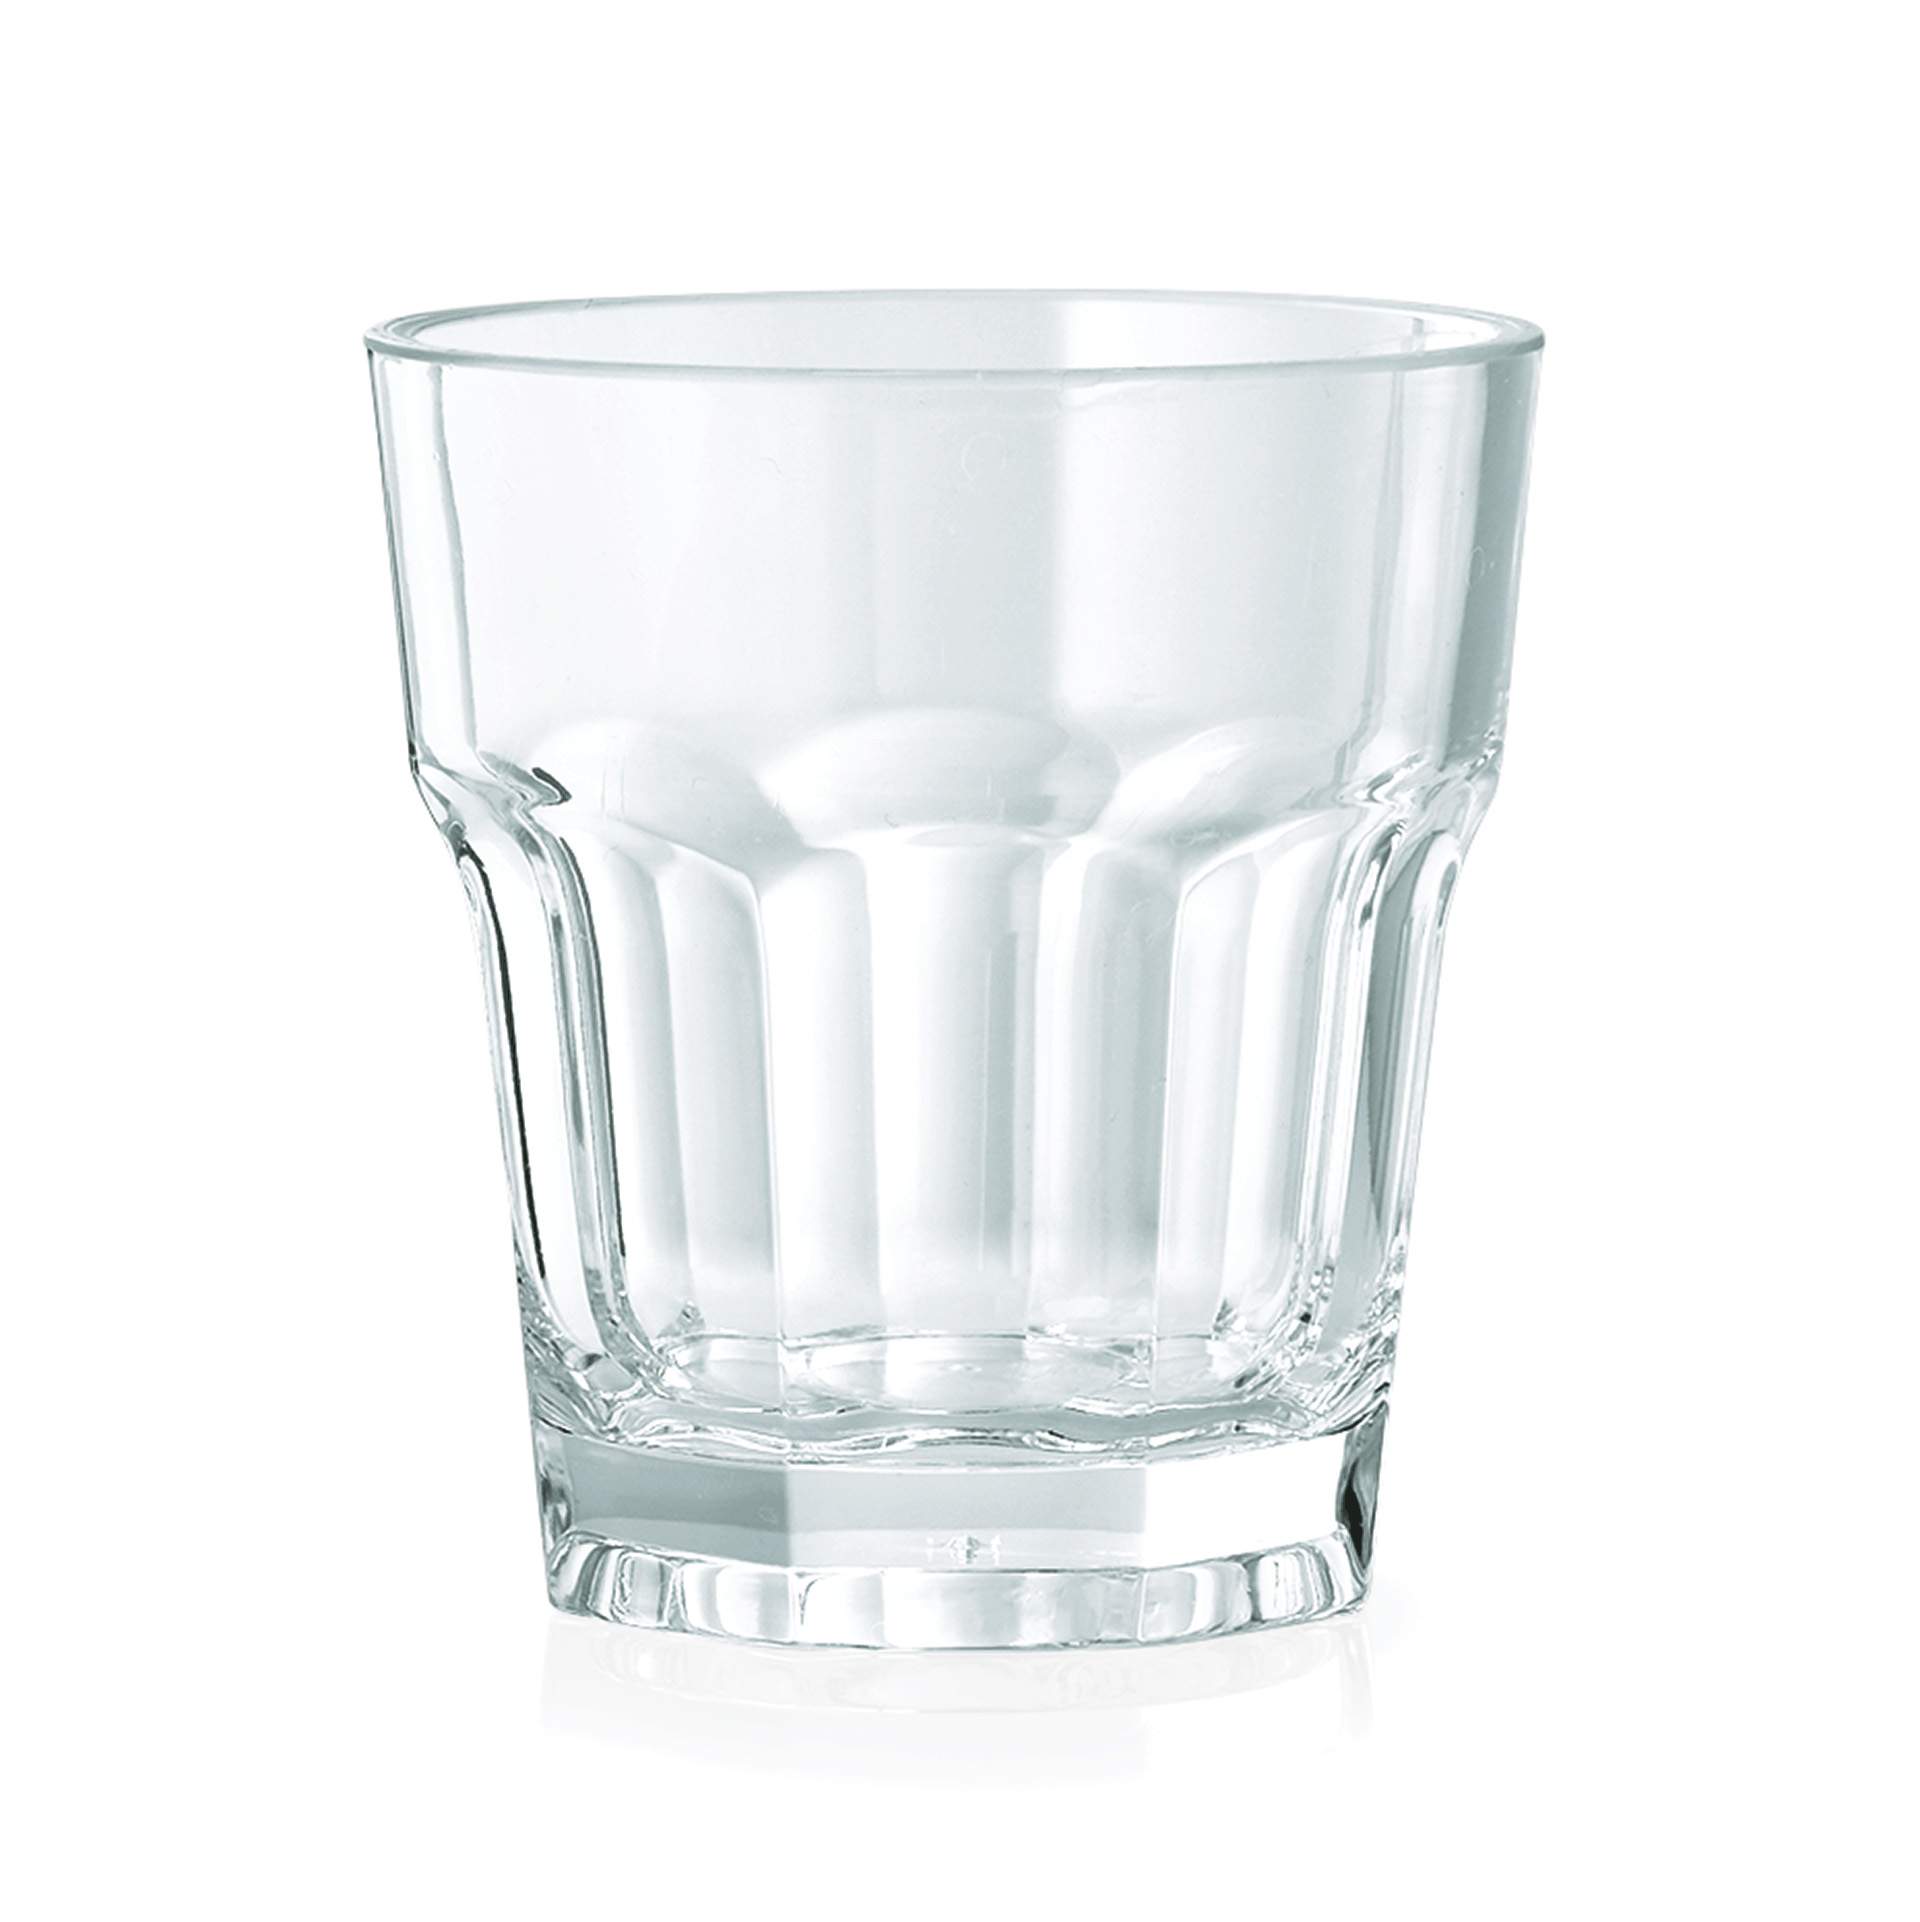 Wasserglas - Serie Pool - Abm. 8,0 cm - Ø oben / unten 7,5 / 5,8 cm - Inhalt 0,19 l - Polycarbonat - premium Qualität - 9450019-A